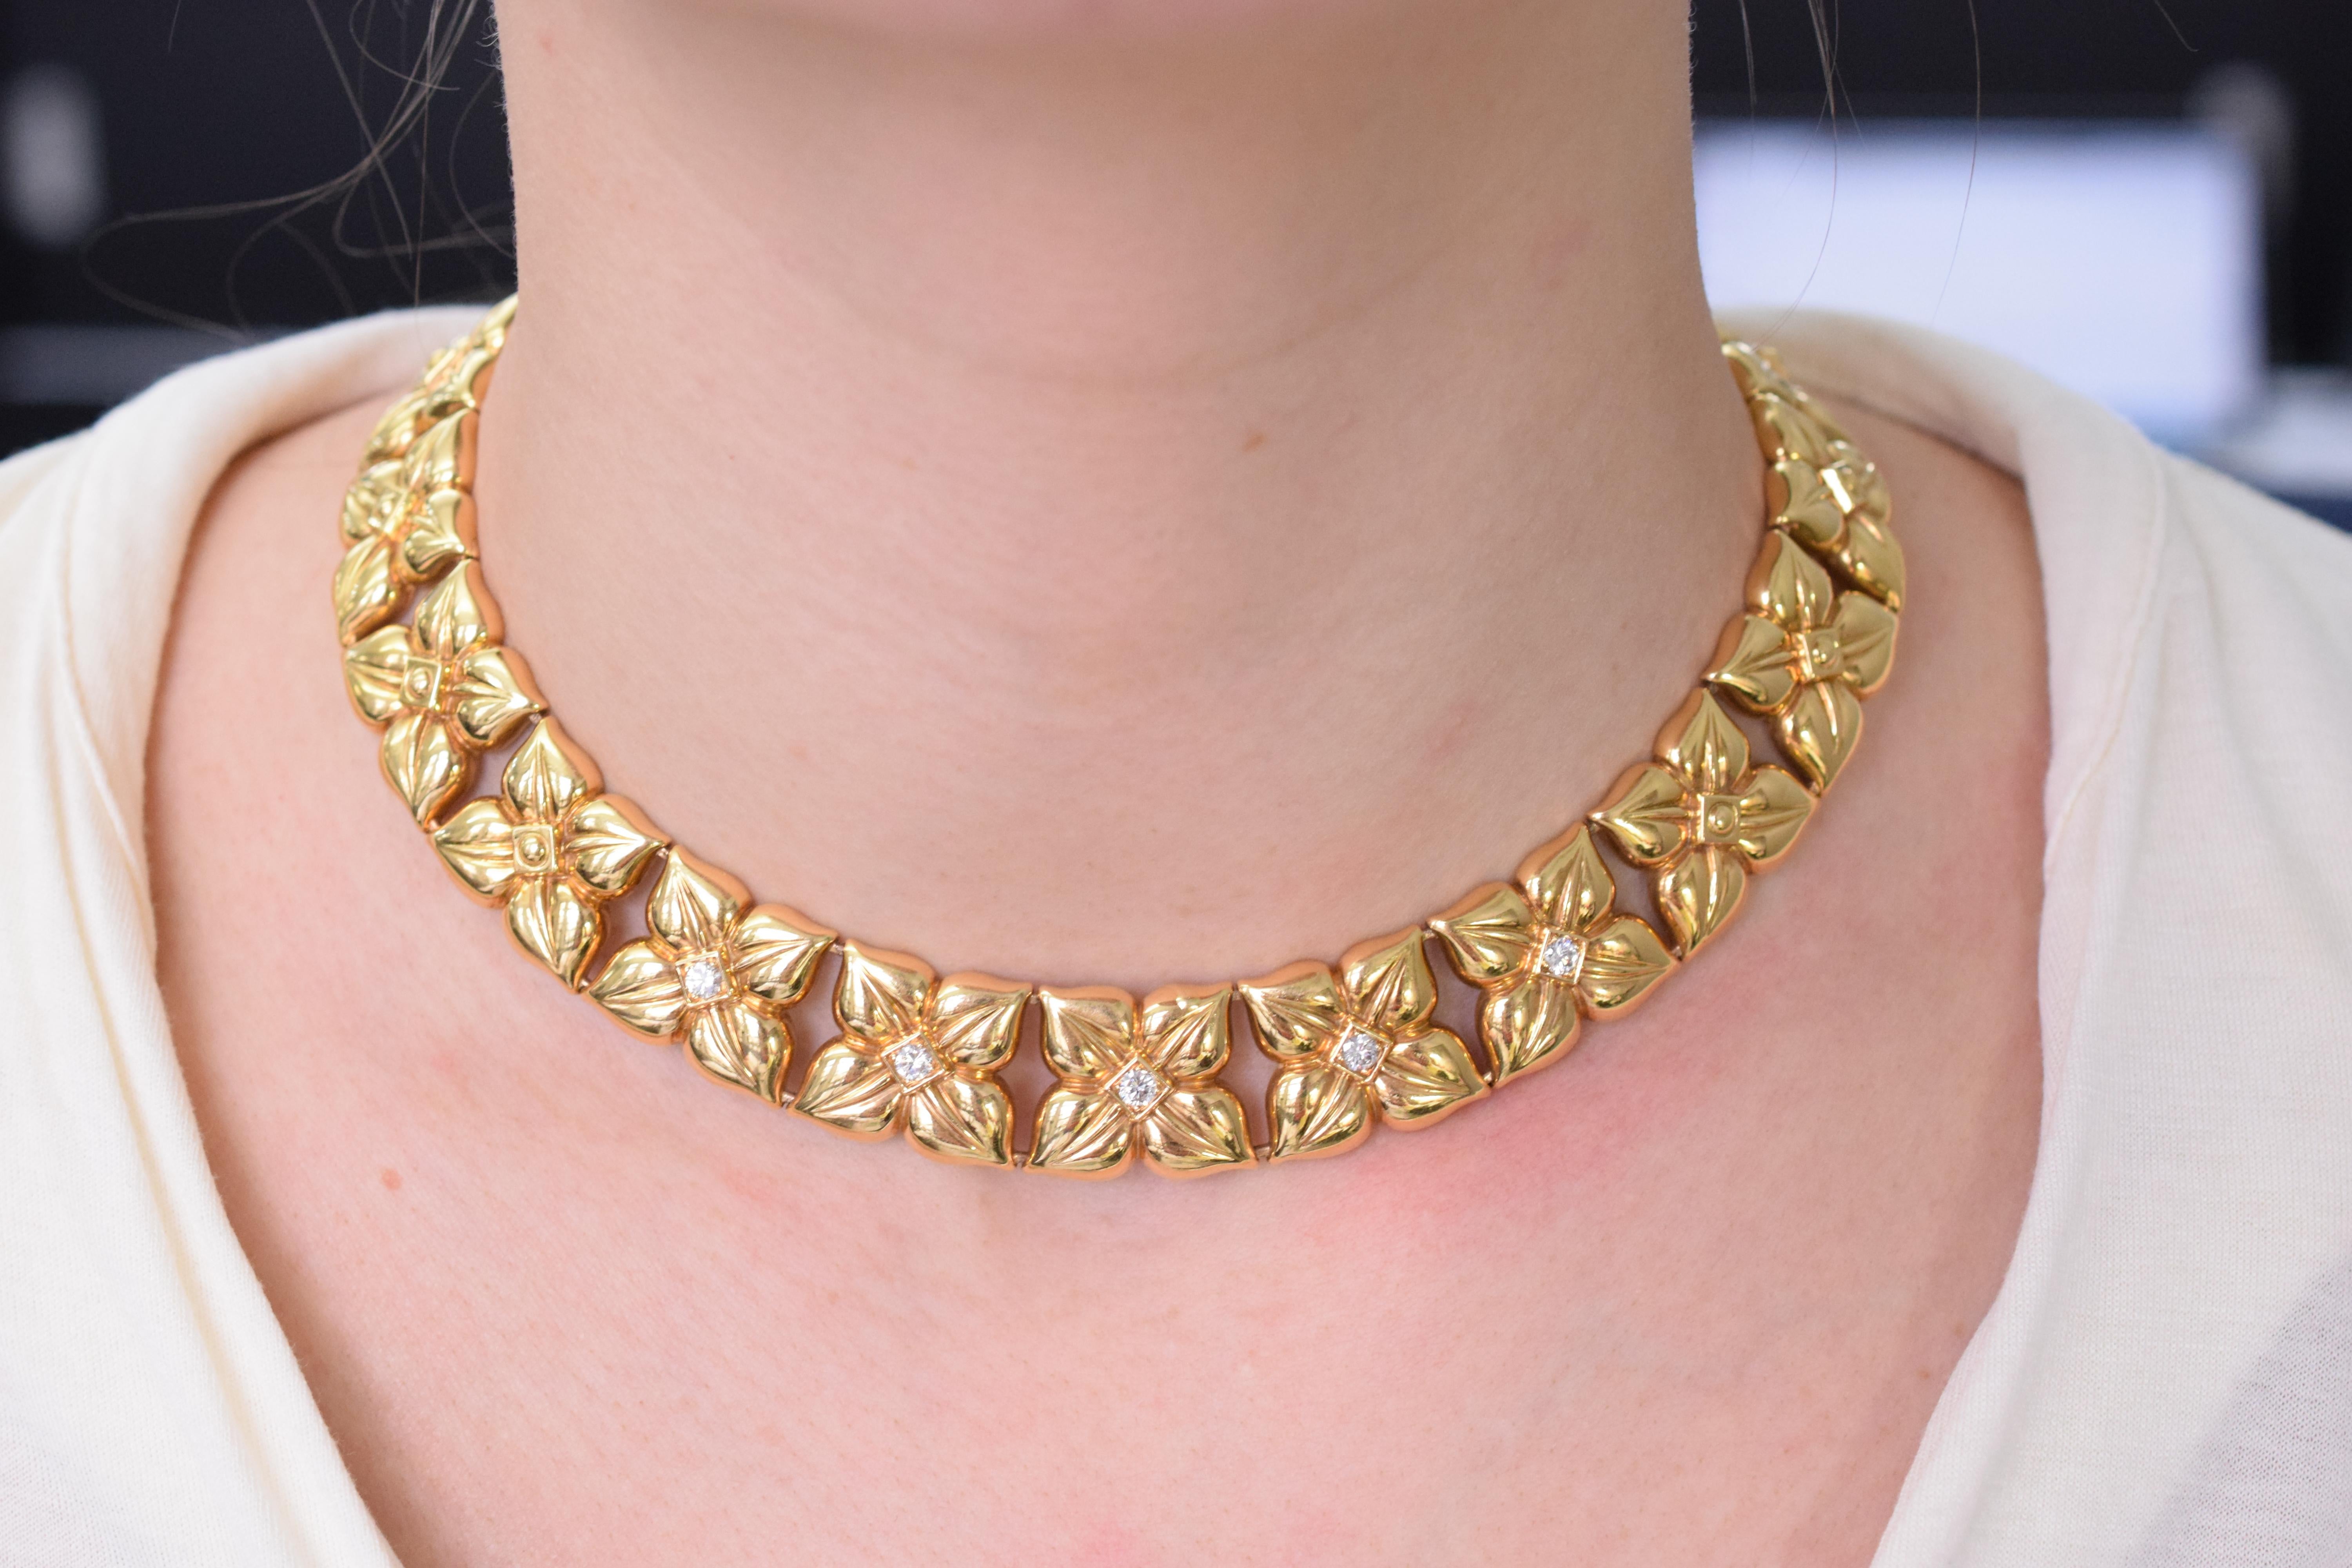 Französisch,  Van Cleef & Arpels Diamant- und Goldkette mit floralen Gliedern und passenden Ohrclips. 
Halskette hat  5 Diamanten in Brillantform (Länge der Halskette: 17 Zoll)
Ohrringe haben  2 Diamanten in Brillantform
Das Gesamtgewicht der